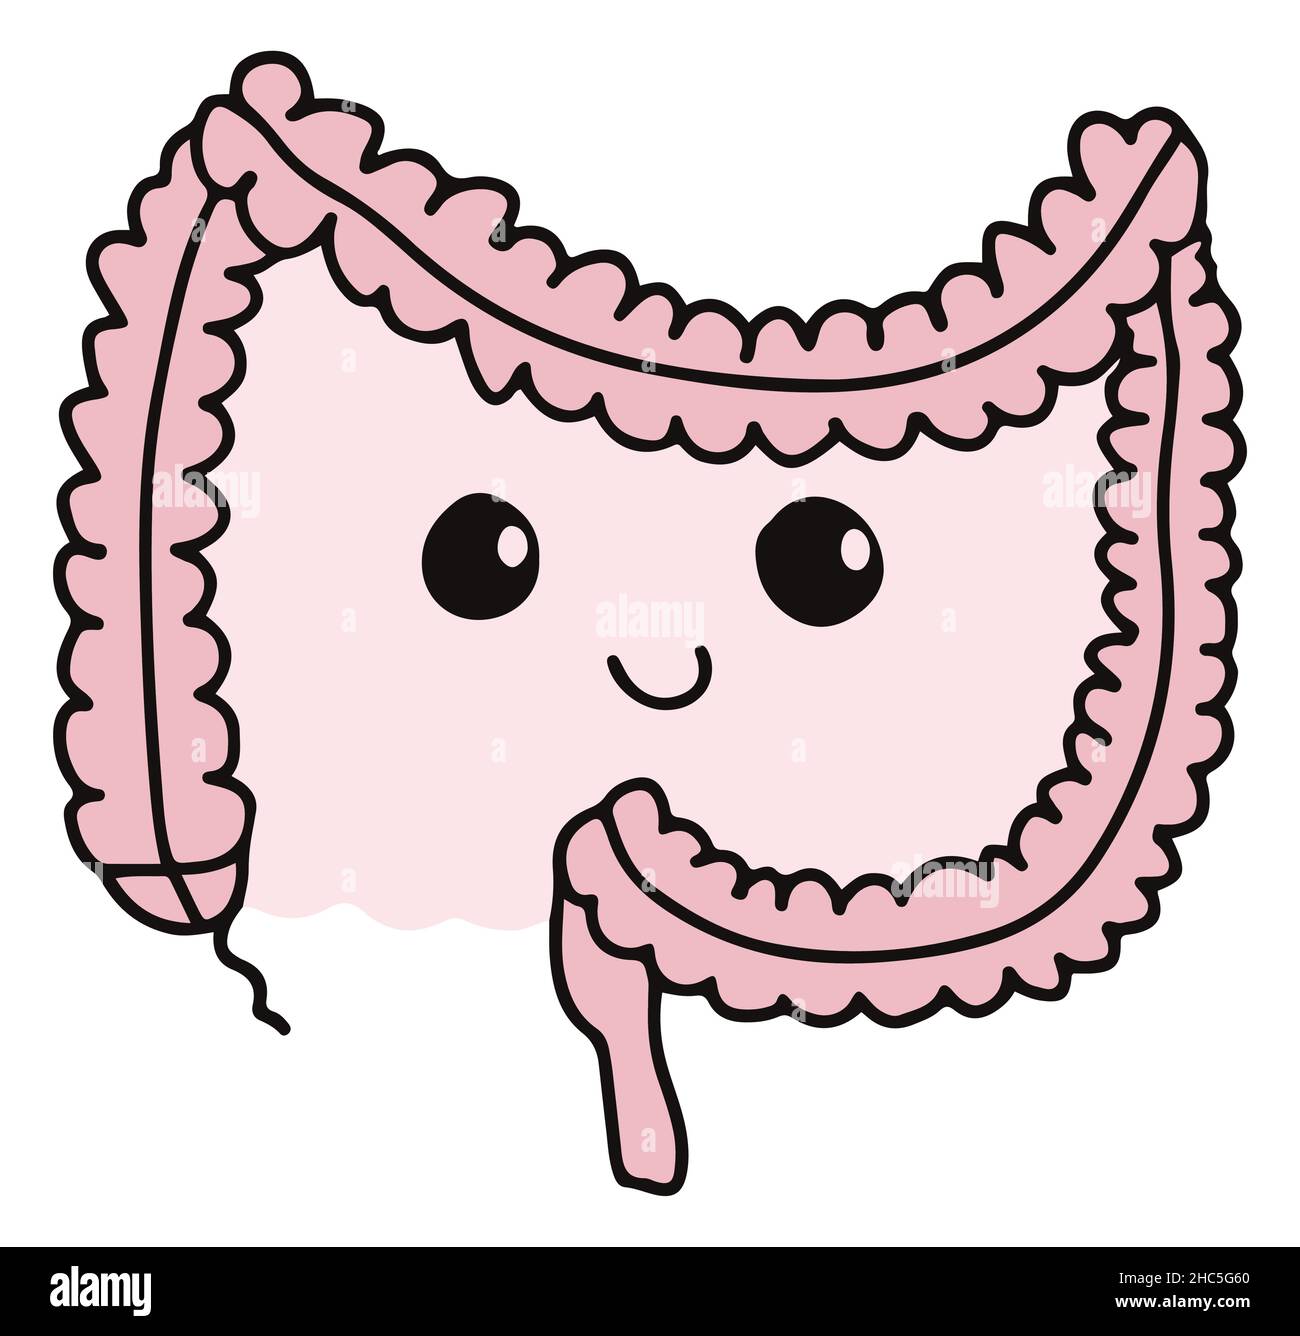 Einfache gastrointestinale Darstellung des inneren Darmsystems. Gesundes Darmkonzept. Menschliche Körperteile im Vektor Stock Vektor